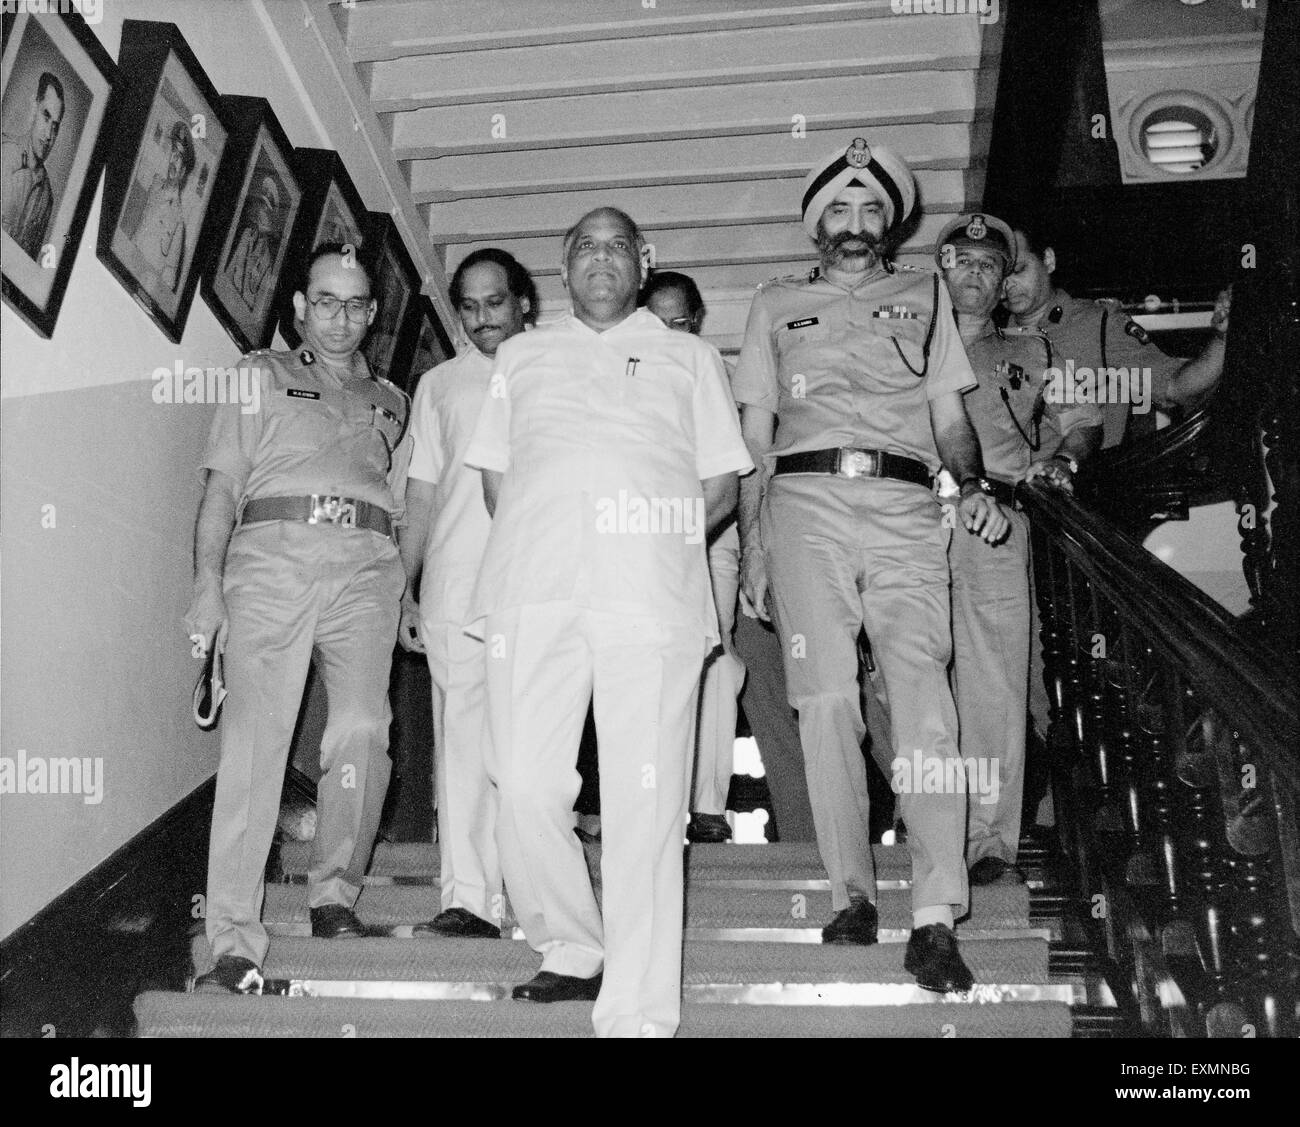 Sharad Pawar Police officers Amarjit Singh Samra police commissioner of Mumbai Satyapal Singh Bombay Mumbai Maharashtra India Stock Photo